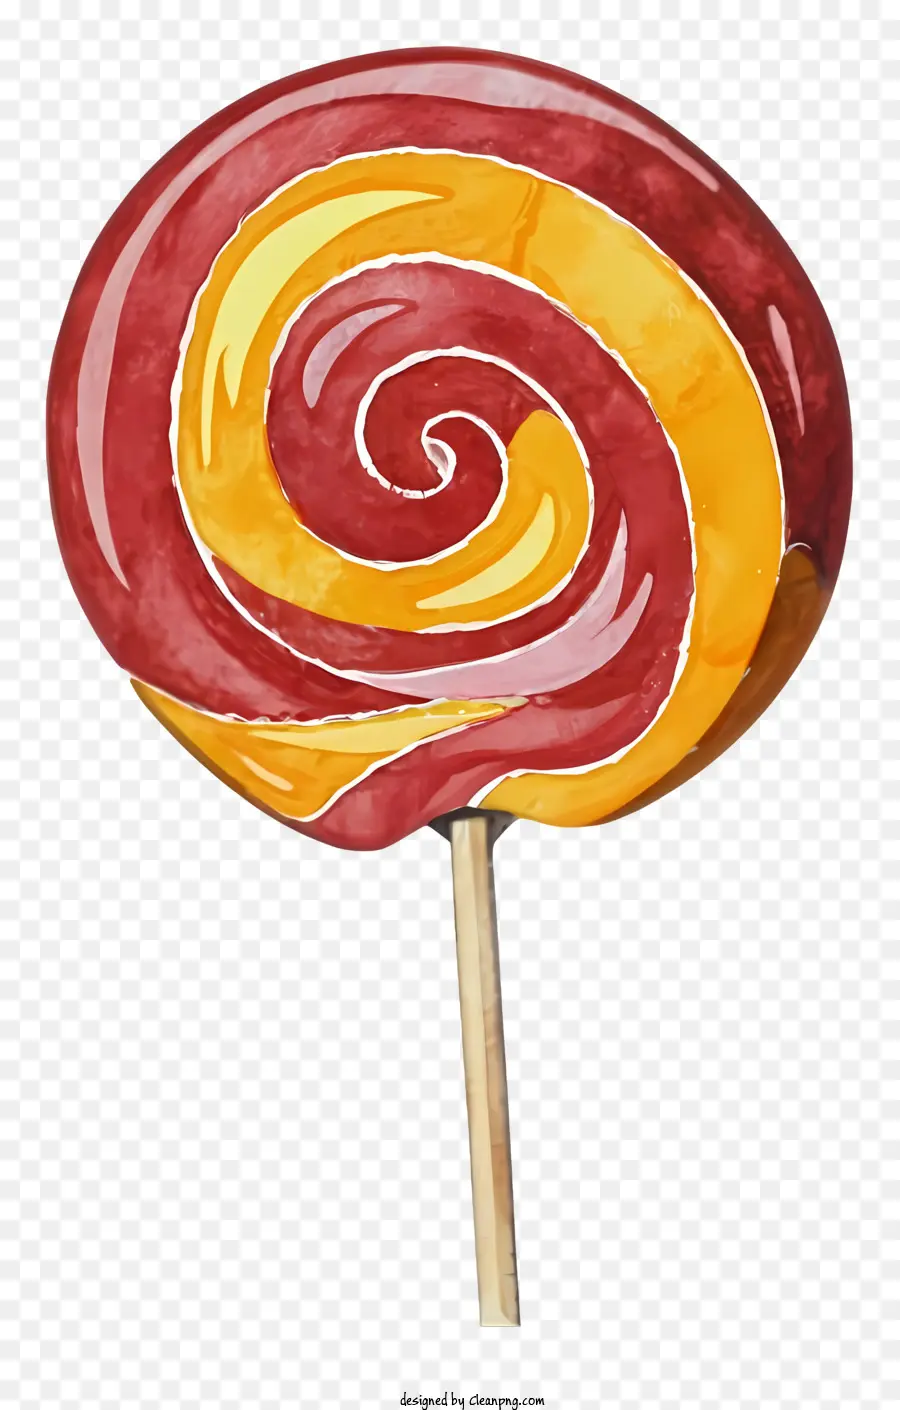 Lollipop Candy Red Lollipop Yellow Lollipop Orange Lollipop - Buntes Lutscher auf Stick mit kurviger Form